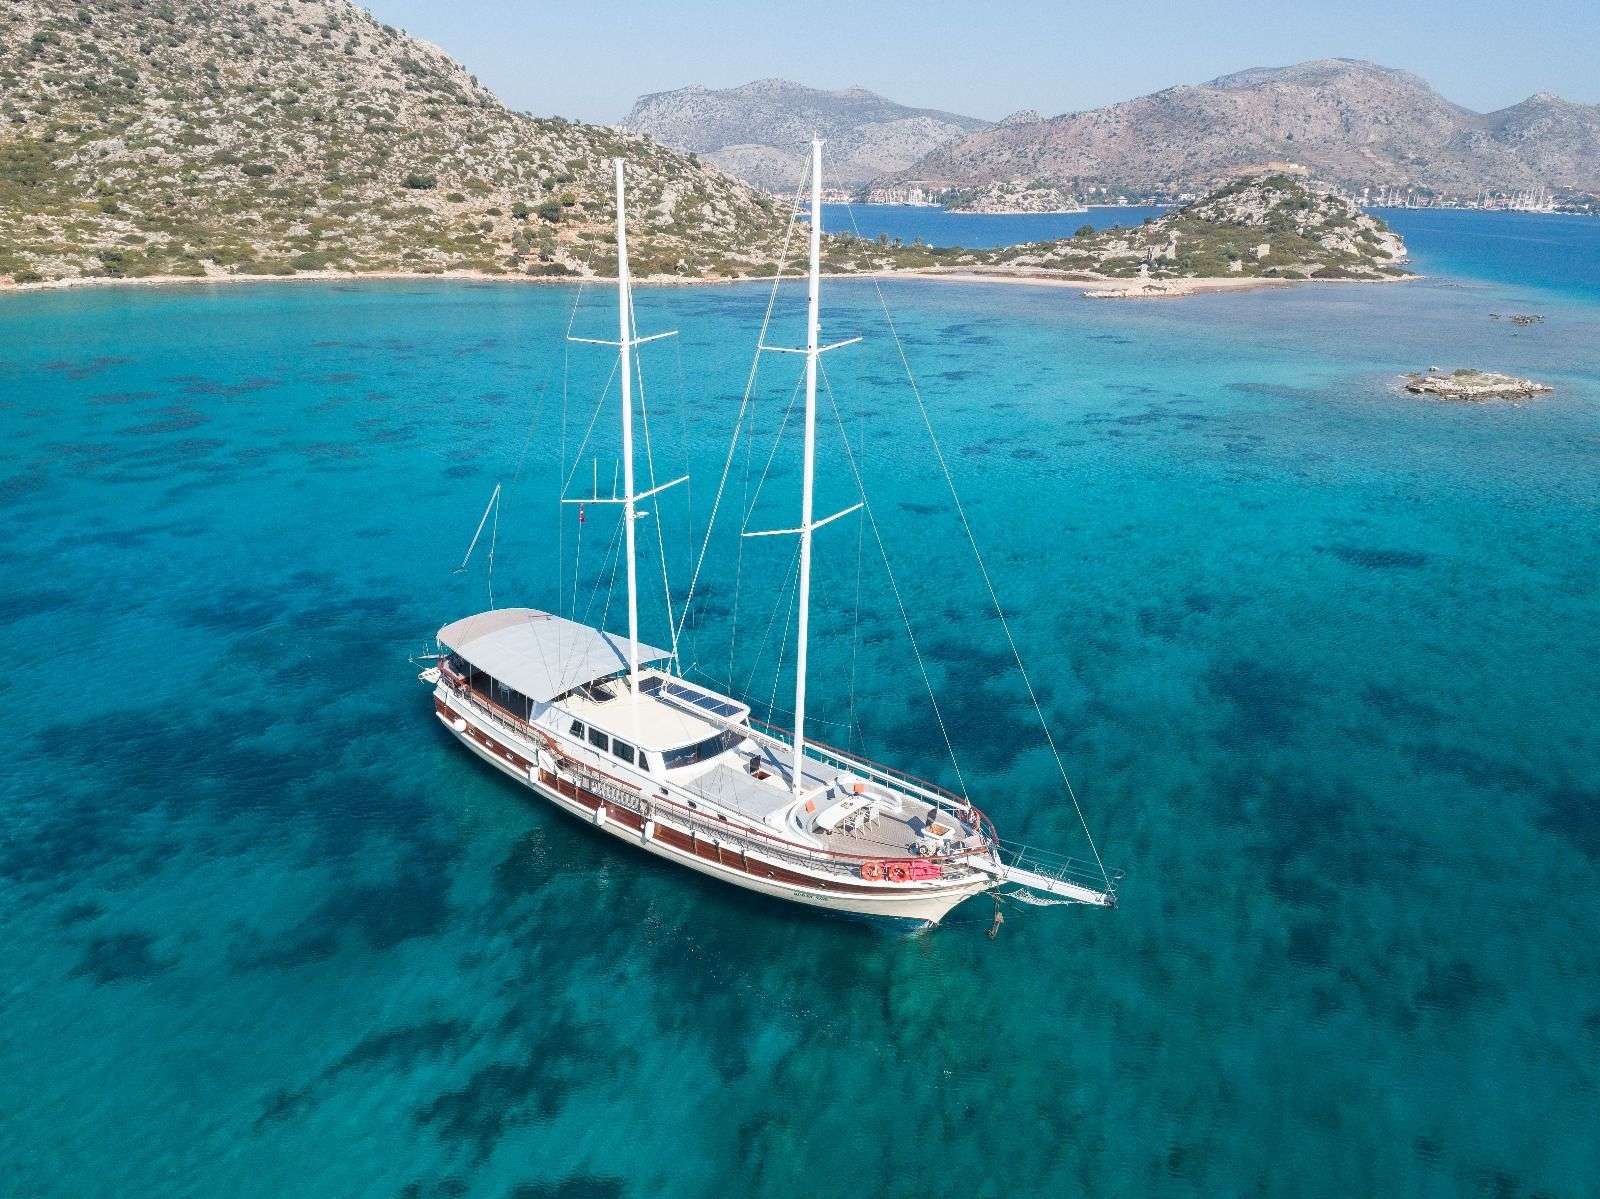 koray ege - Yacht Charter Milos & Boat hire in Greece & Turkey 2